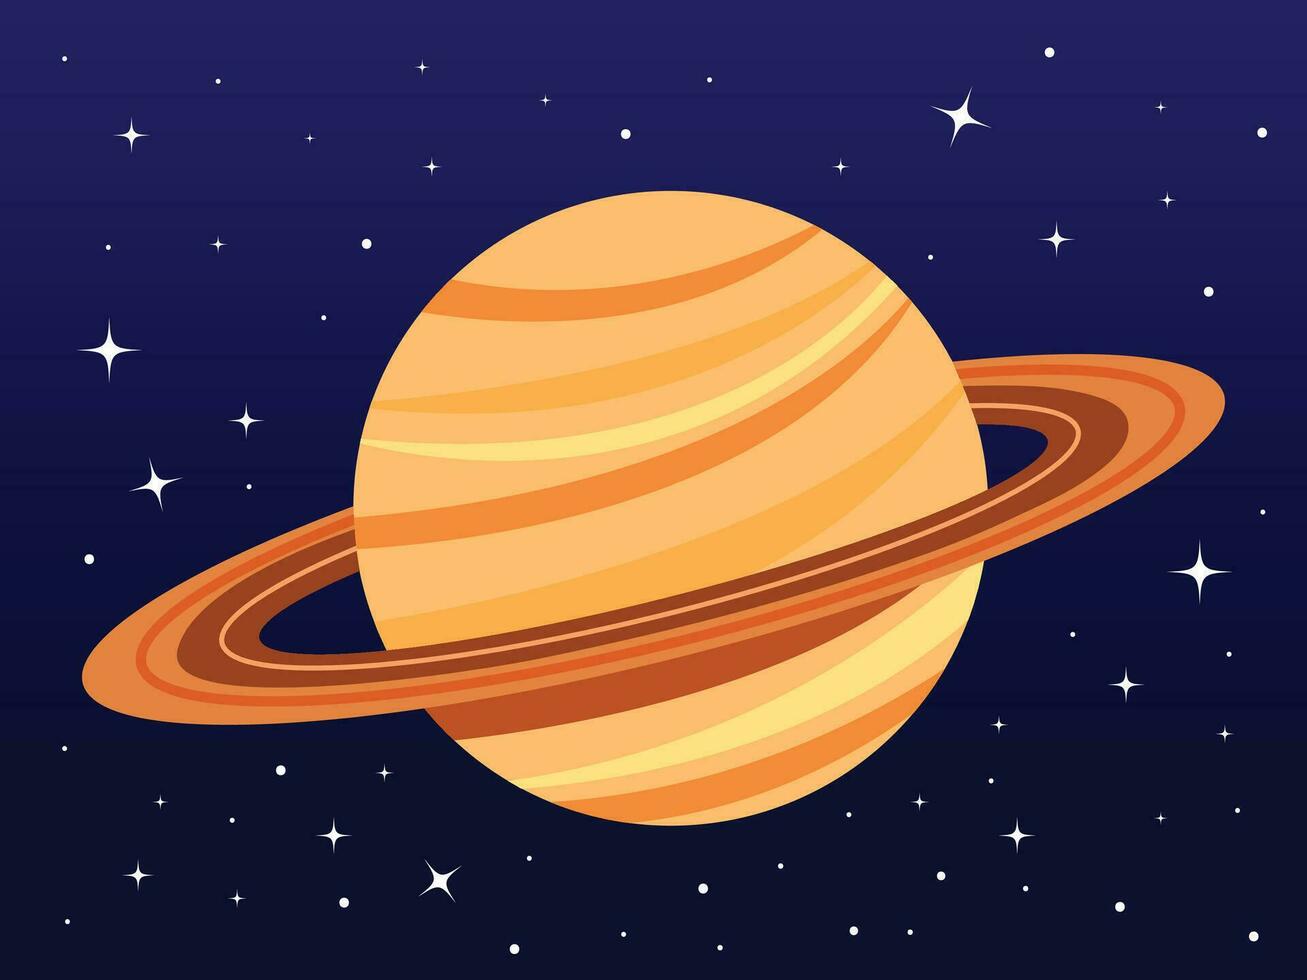 Saturno planeta vector ilustración aislado en oscuro cielo con estrellas antecedentes. Saturno planeta con anillo. sencillo plano dibujos animados Arte estilizado astronomía temática dibujo.